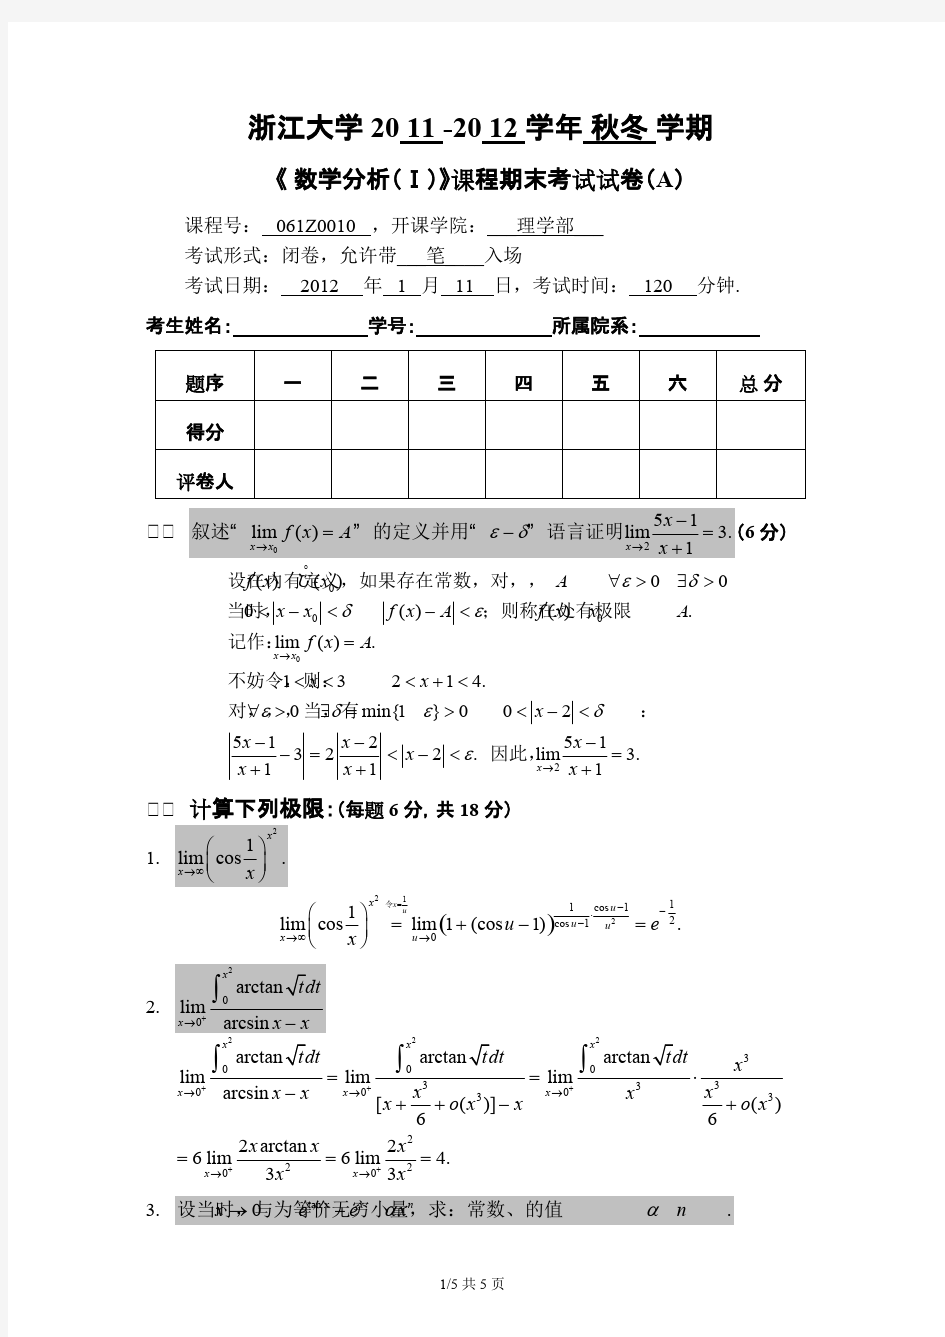 浙江大学-数学分析(1)-试卷及答案(baidu),推荐文档